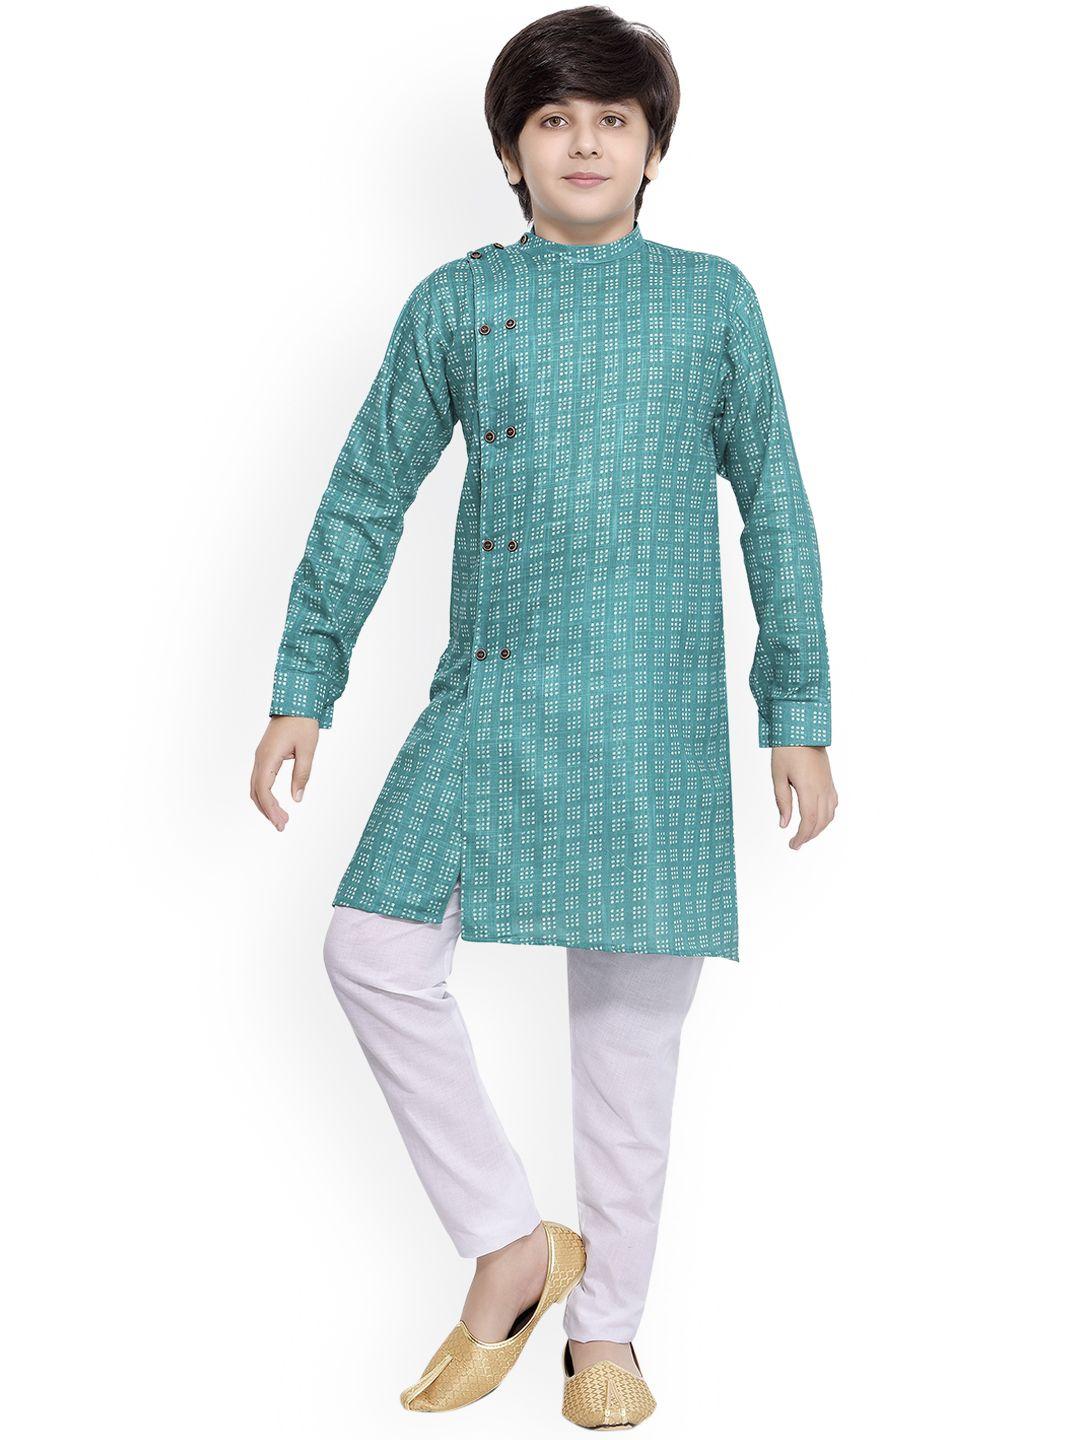 jeetethnics boys turquoise blue & white printed angrakha kurta with pyjamas